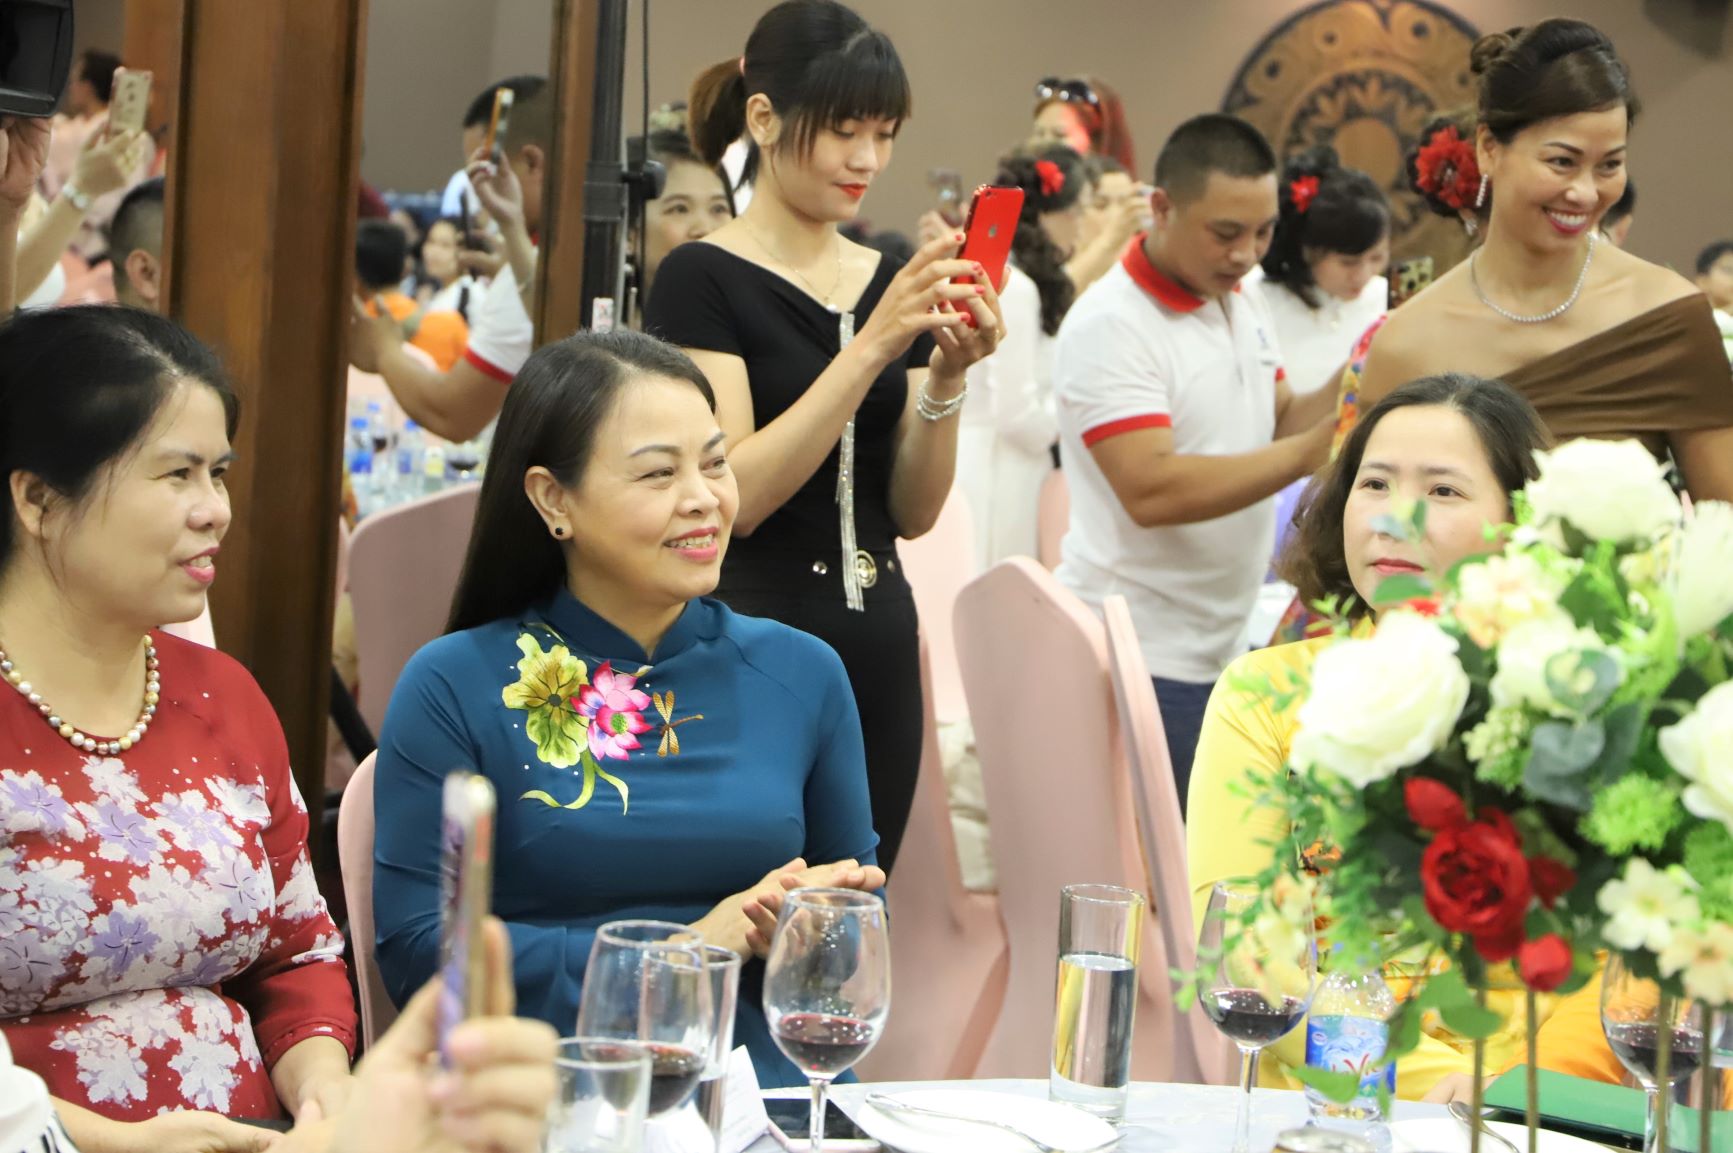 Tham dự sự kiện còn có bà Nguyễn Thị Thu Hà - Chủ tịch Hội Liên hiệp phụ nữ Việt Nam.